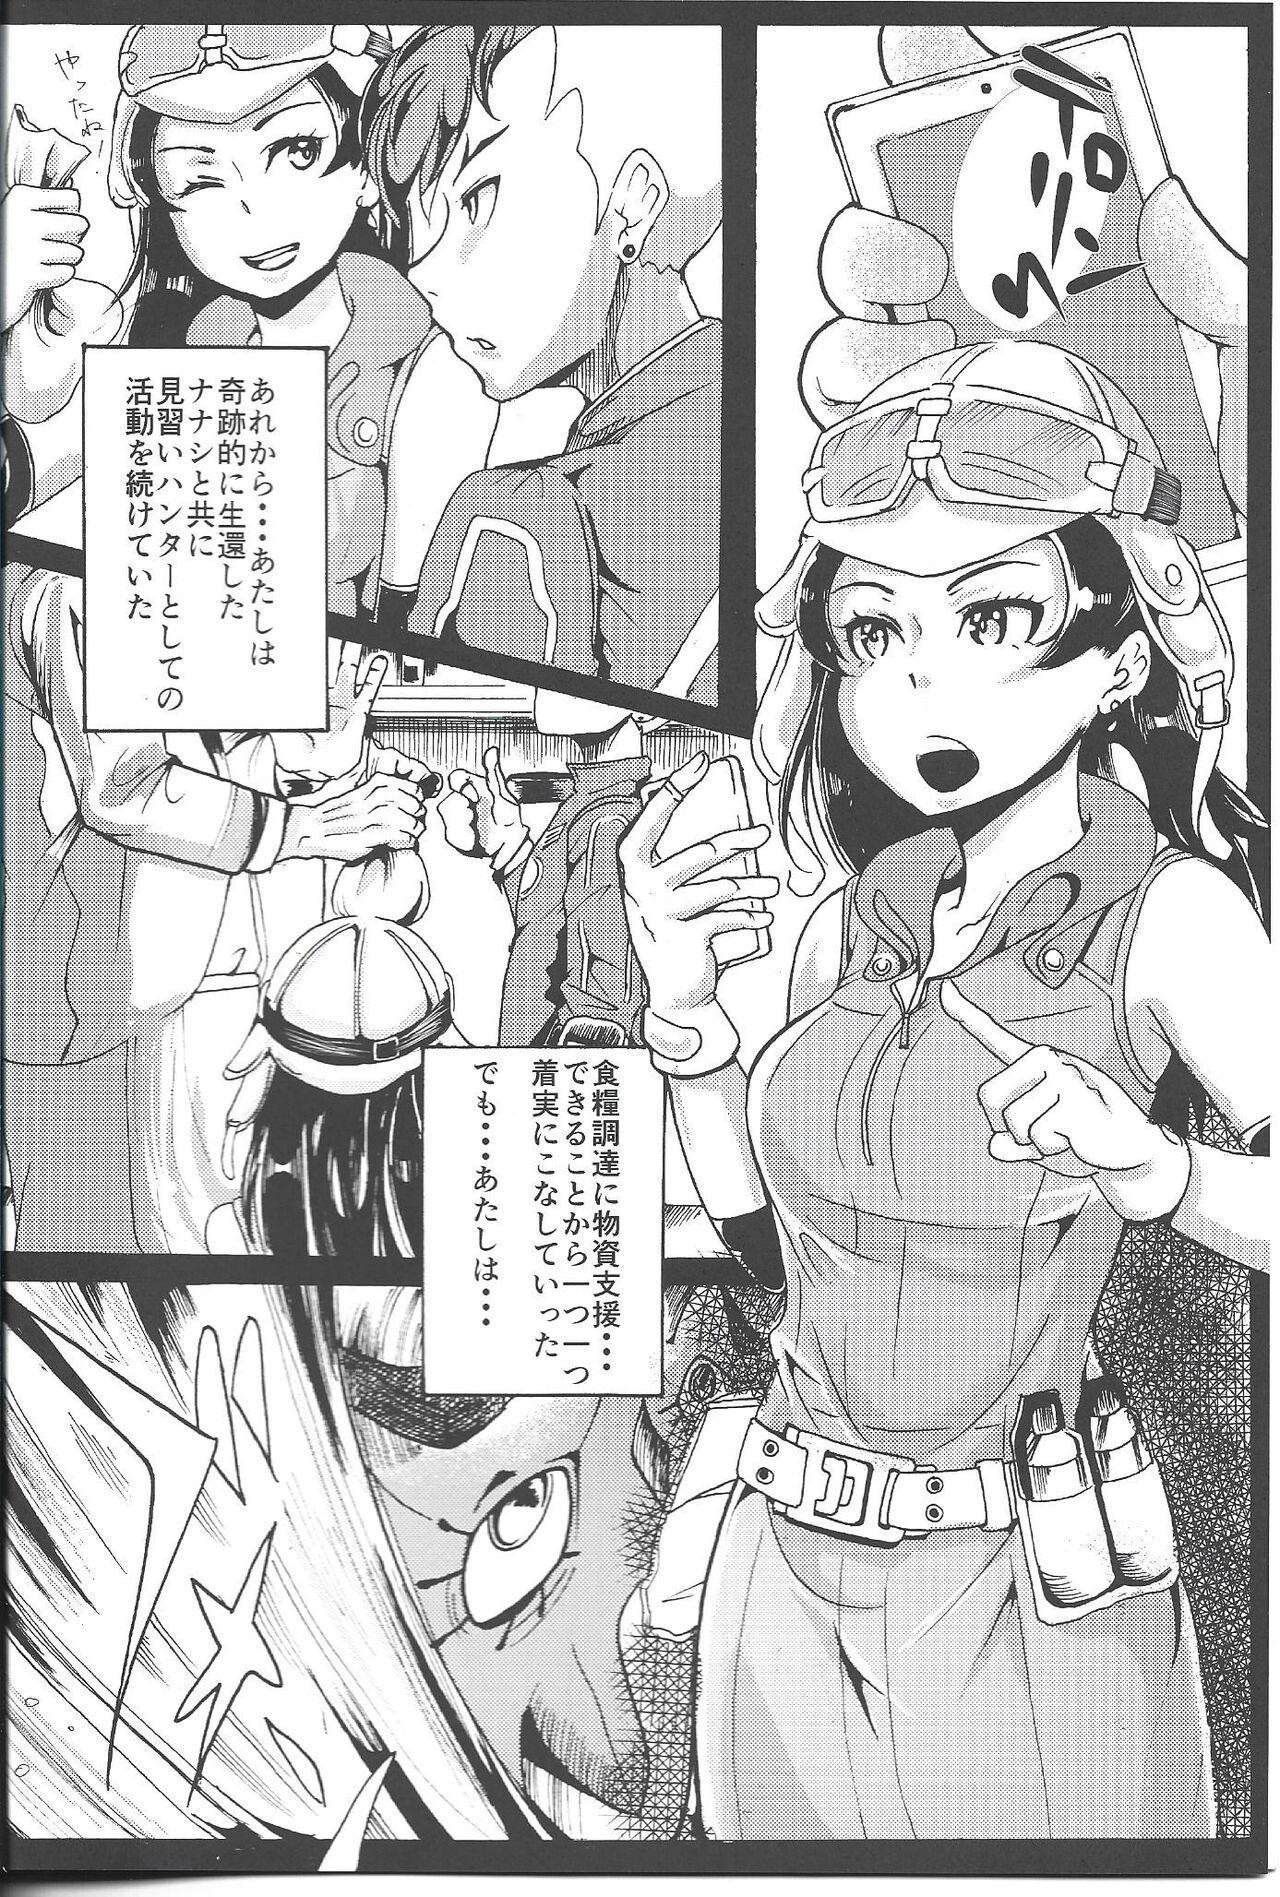 Twistys Ichininmae no Megami Zenpen - The Full Grown Goddess part 1 - Shin megami tensei Amigos - Page 3